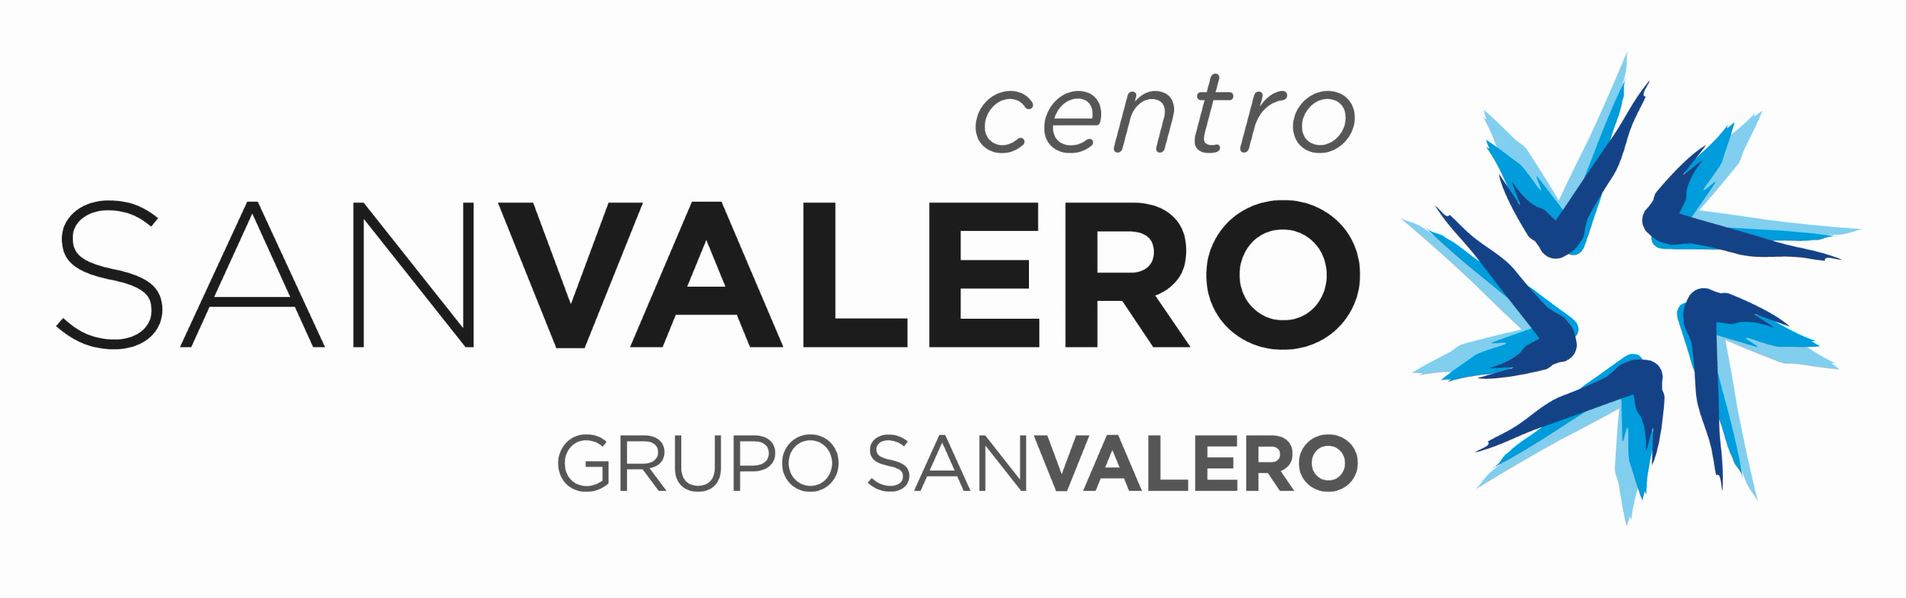 logo_san_valero